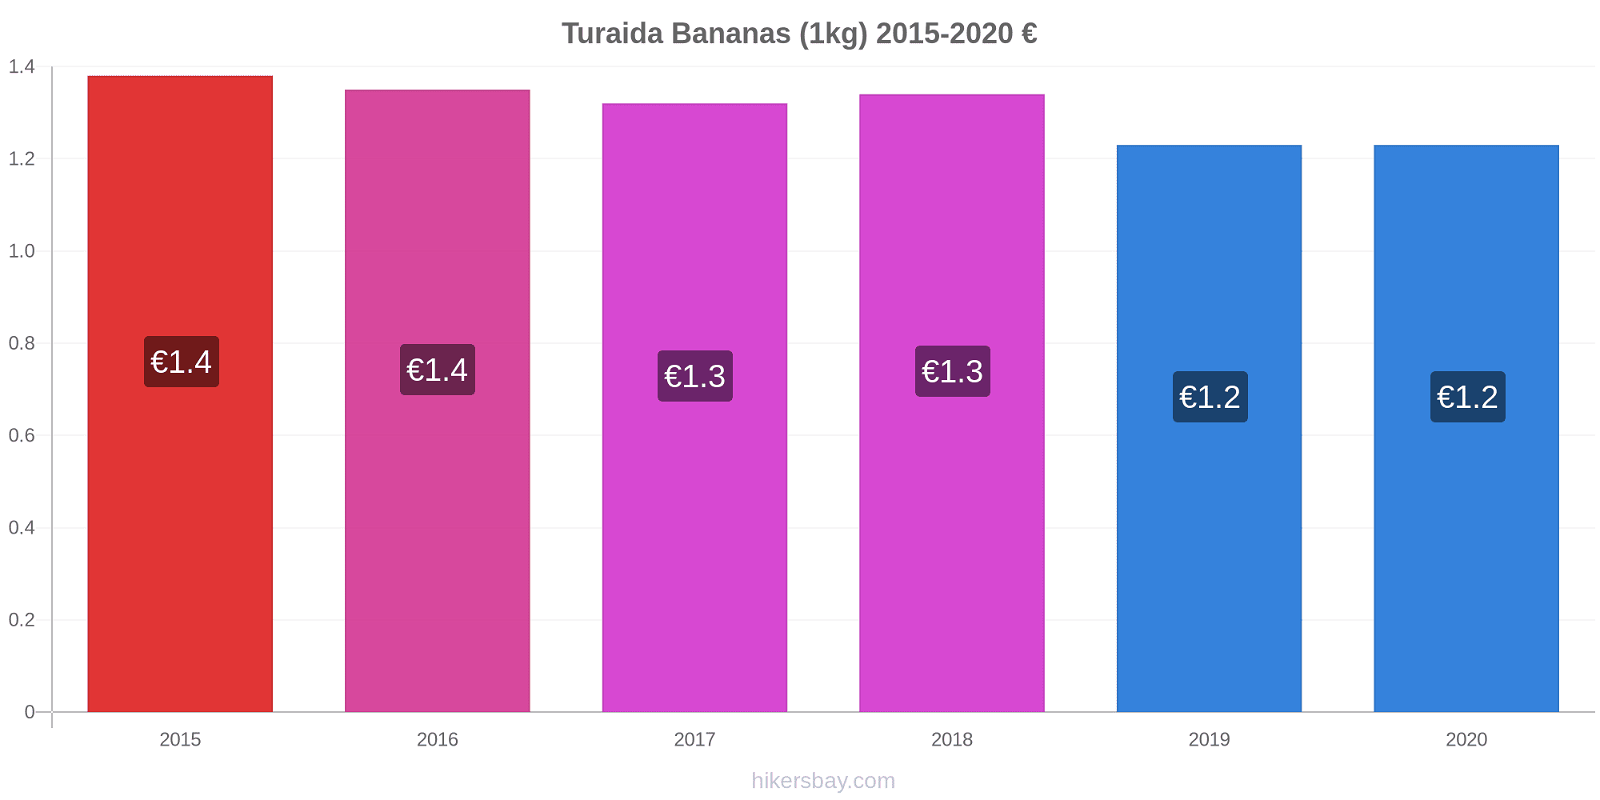 Turaida variação de preço Banana (1kg) hikersbay.com